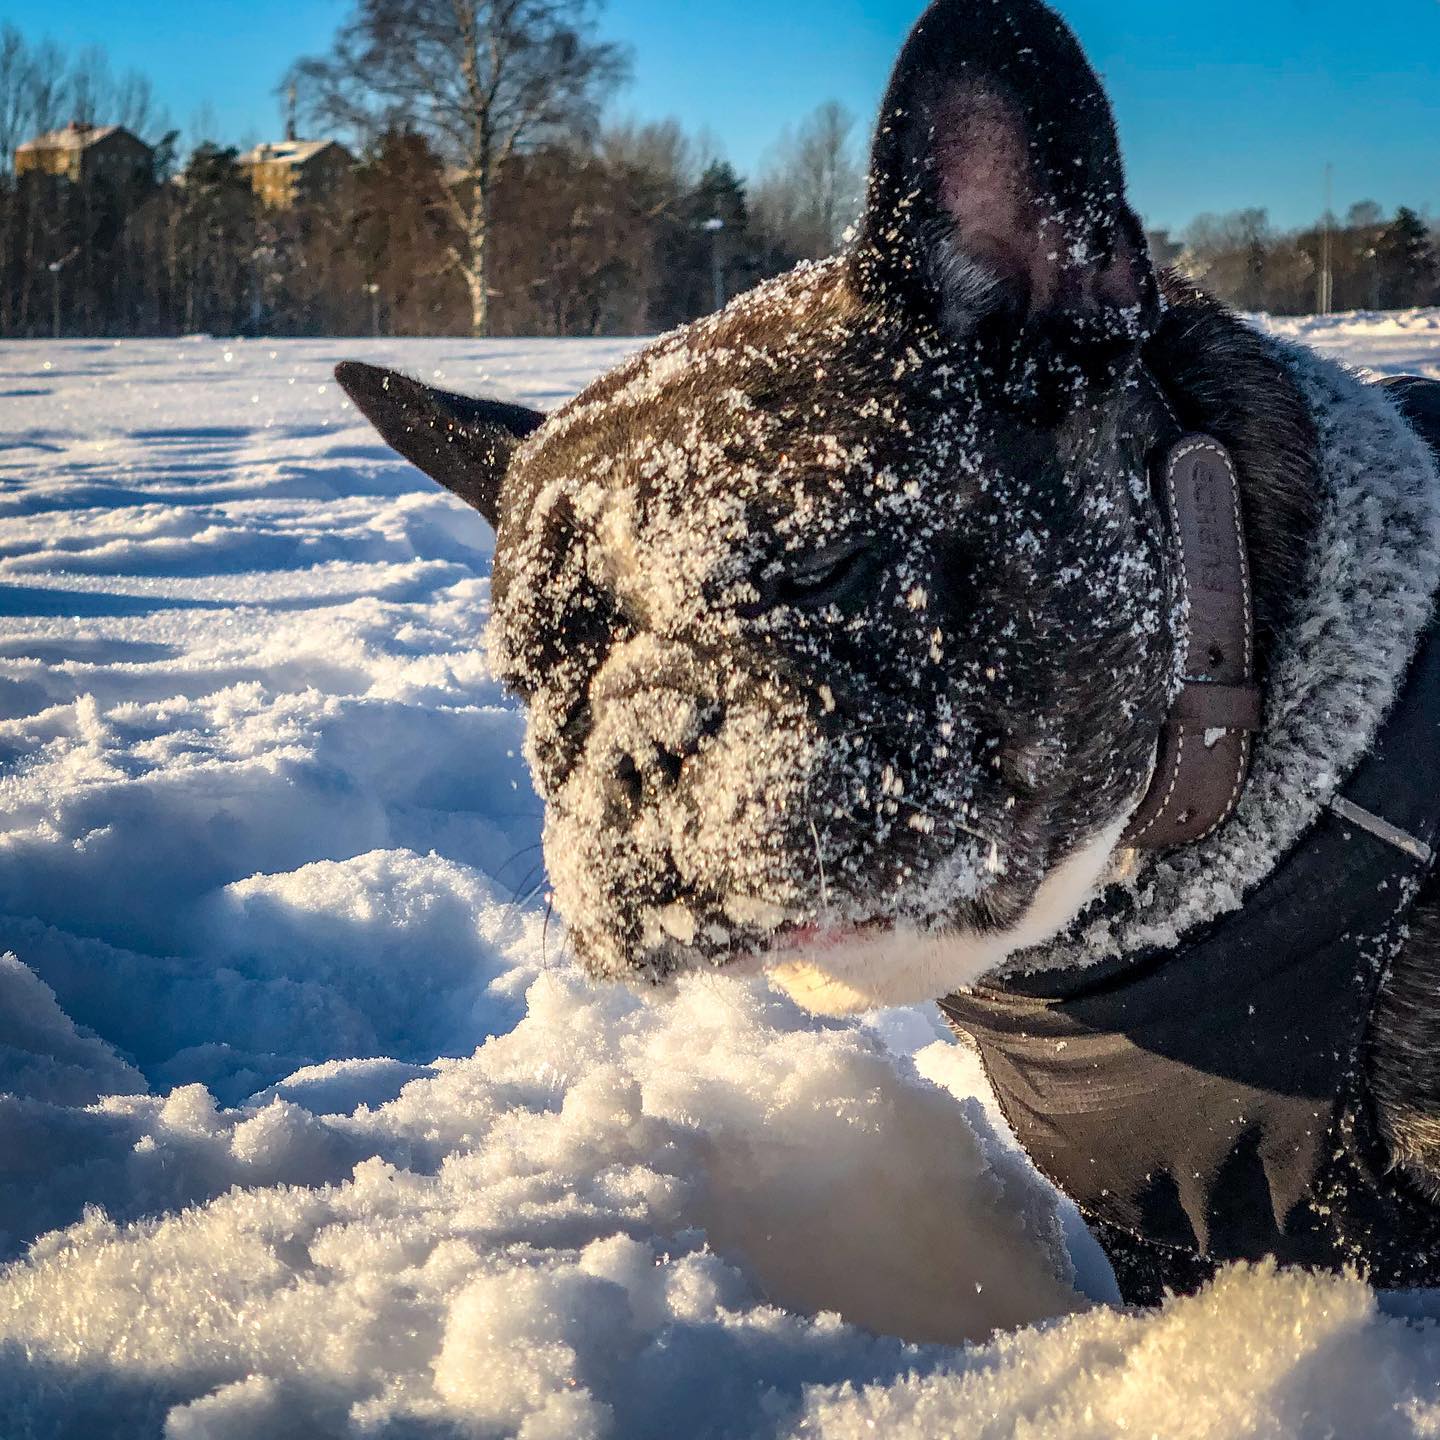 Snö och hund. @valterwistbacka